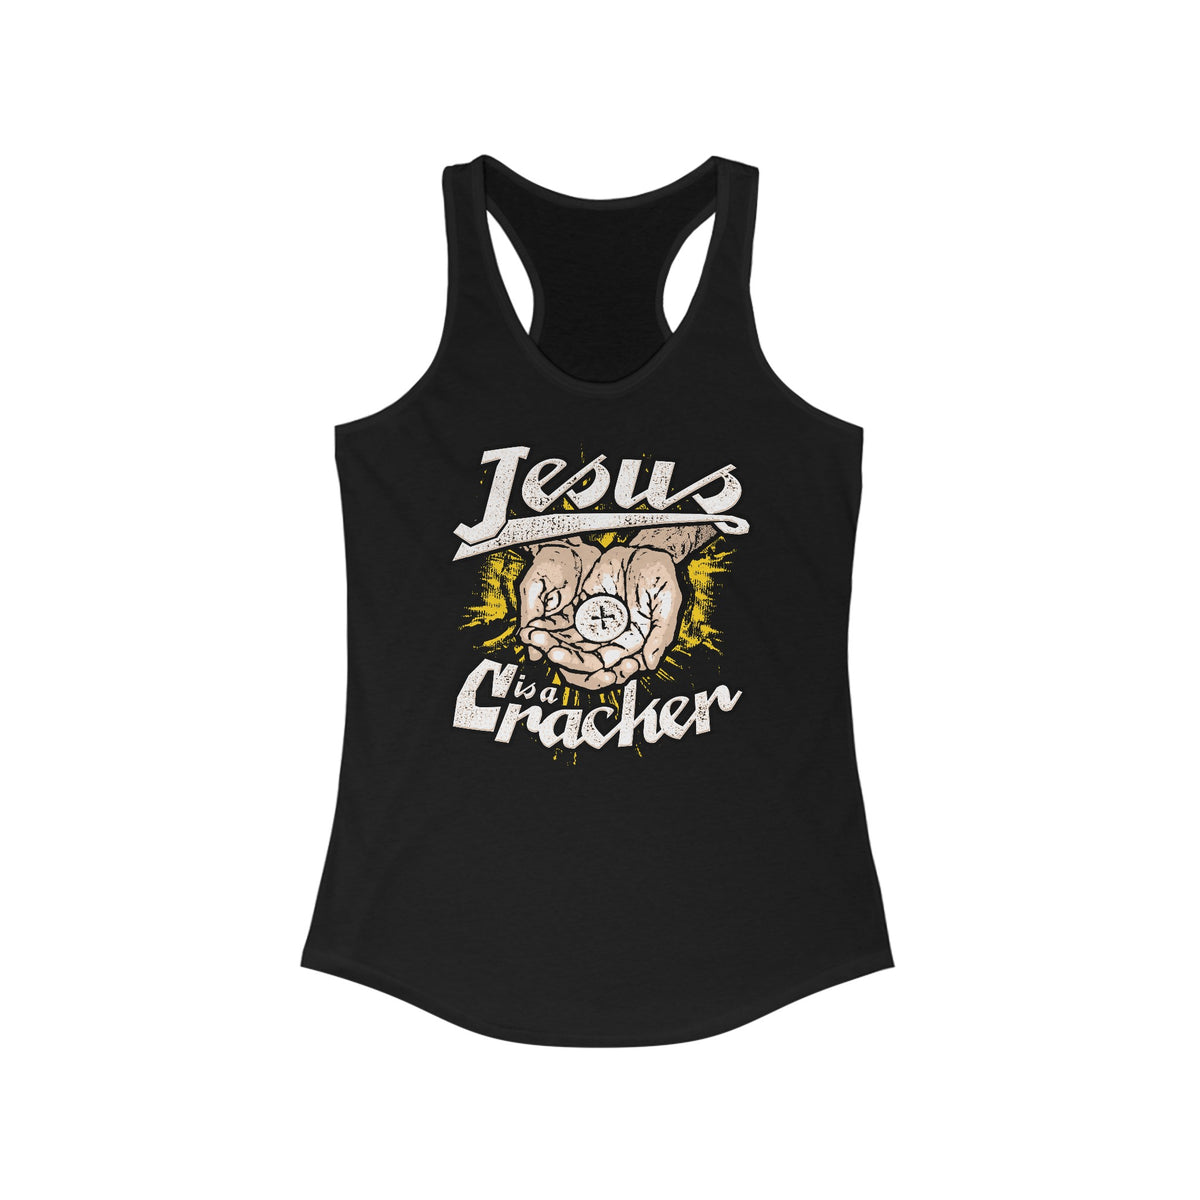 Jesus Is A Cracker - Women's Racerback Tank